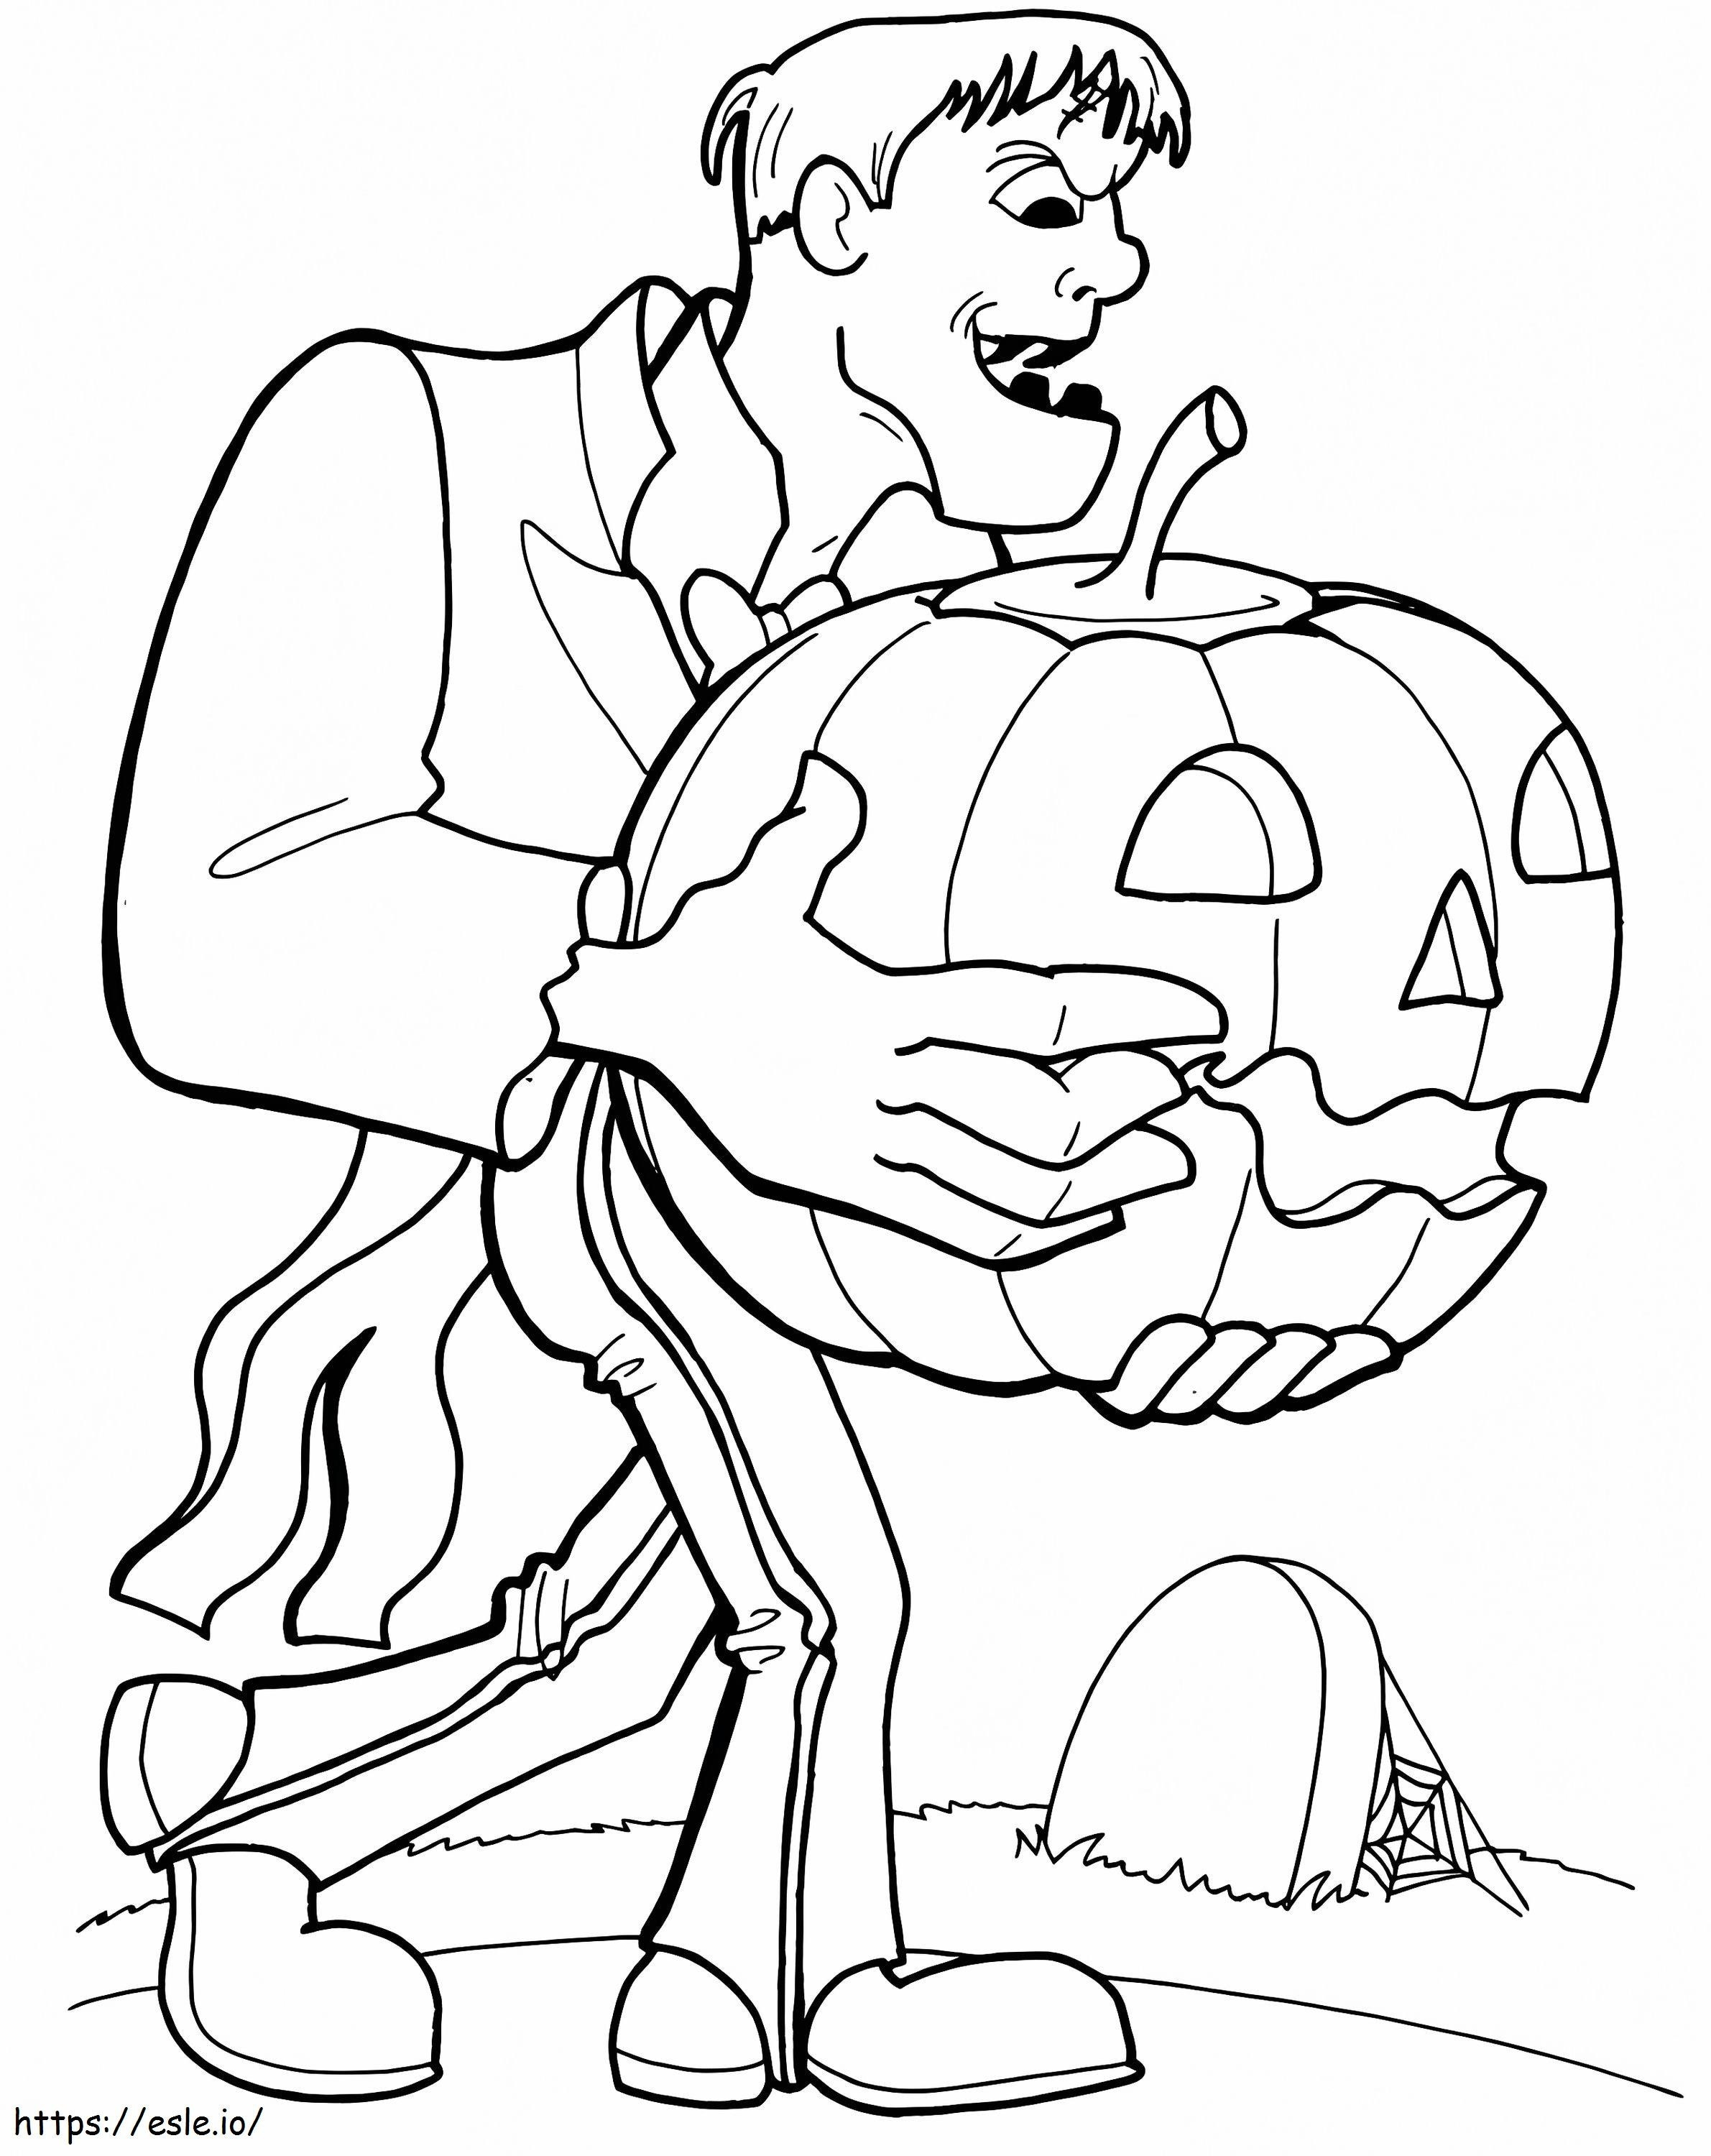 1539676914 Arkusz do kolorowania Frankensteina Więcej twarzy Frankensteina kolorowanka